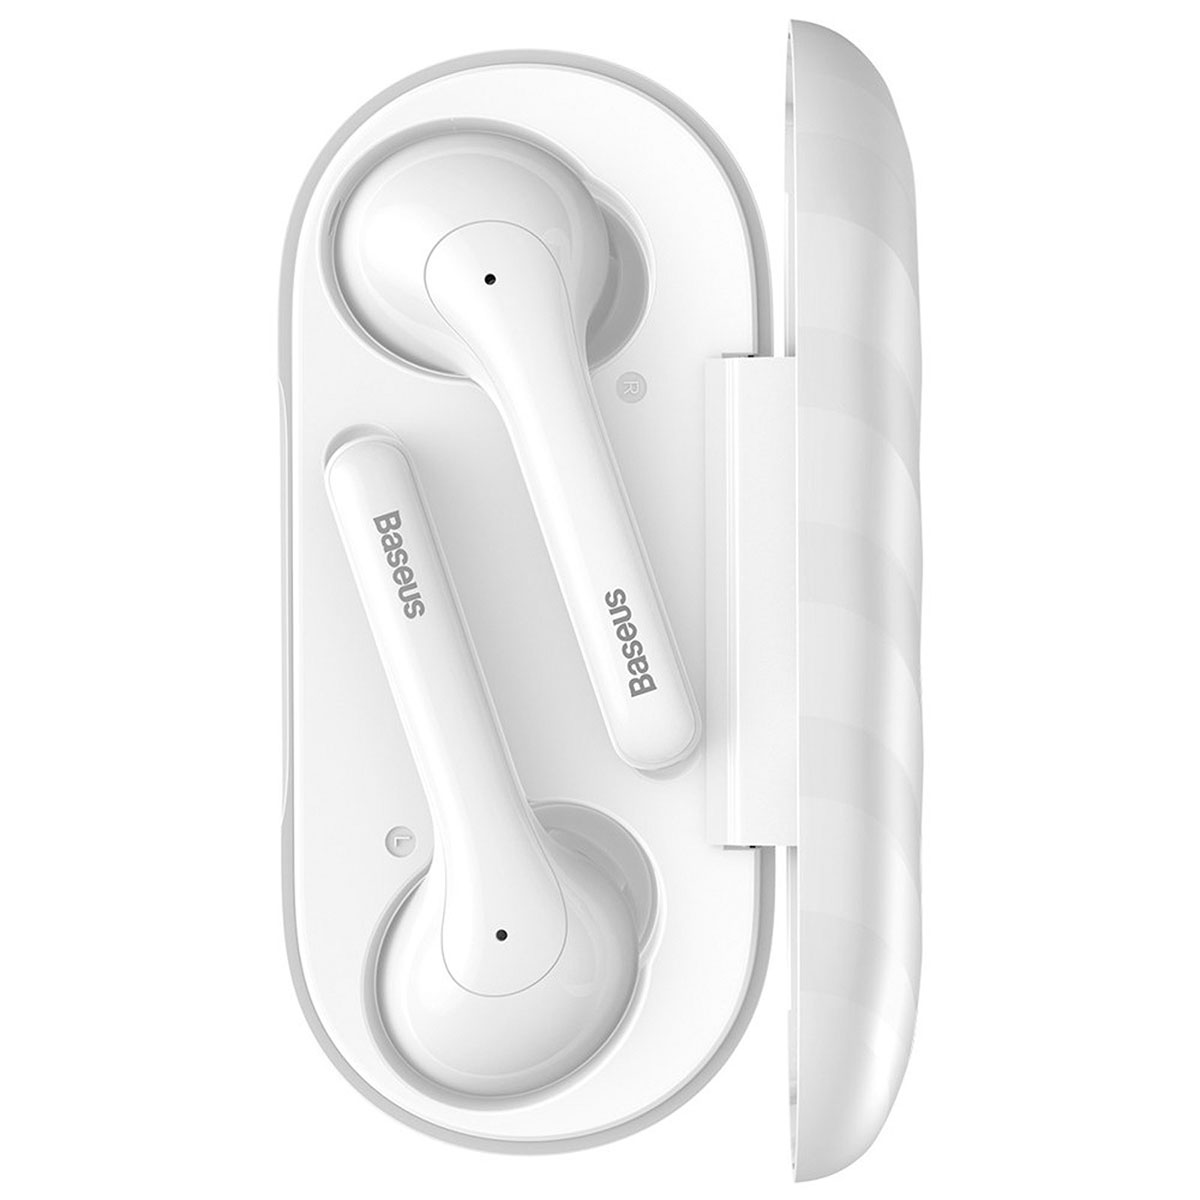 Гарнитура (наушники с микрофоном) беспроводная, BASEUS NGW07-02 Encok True Wireless Earphones W07 Bluetooth 5.0 TWS, цвет белый.